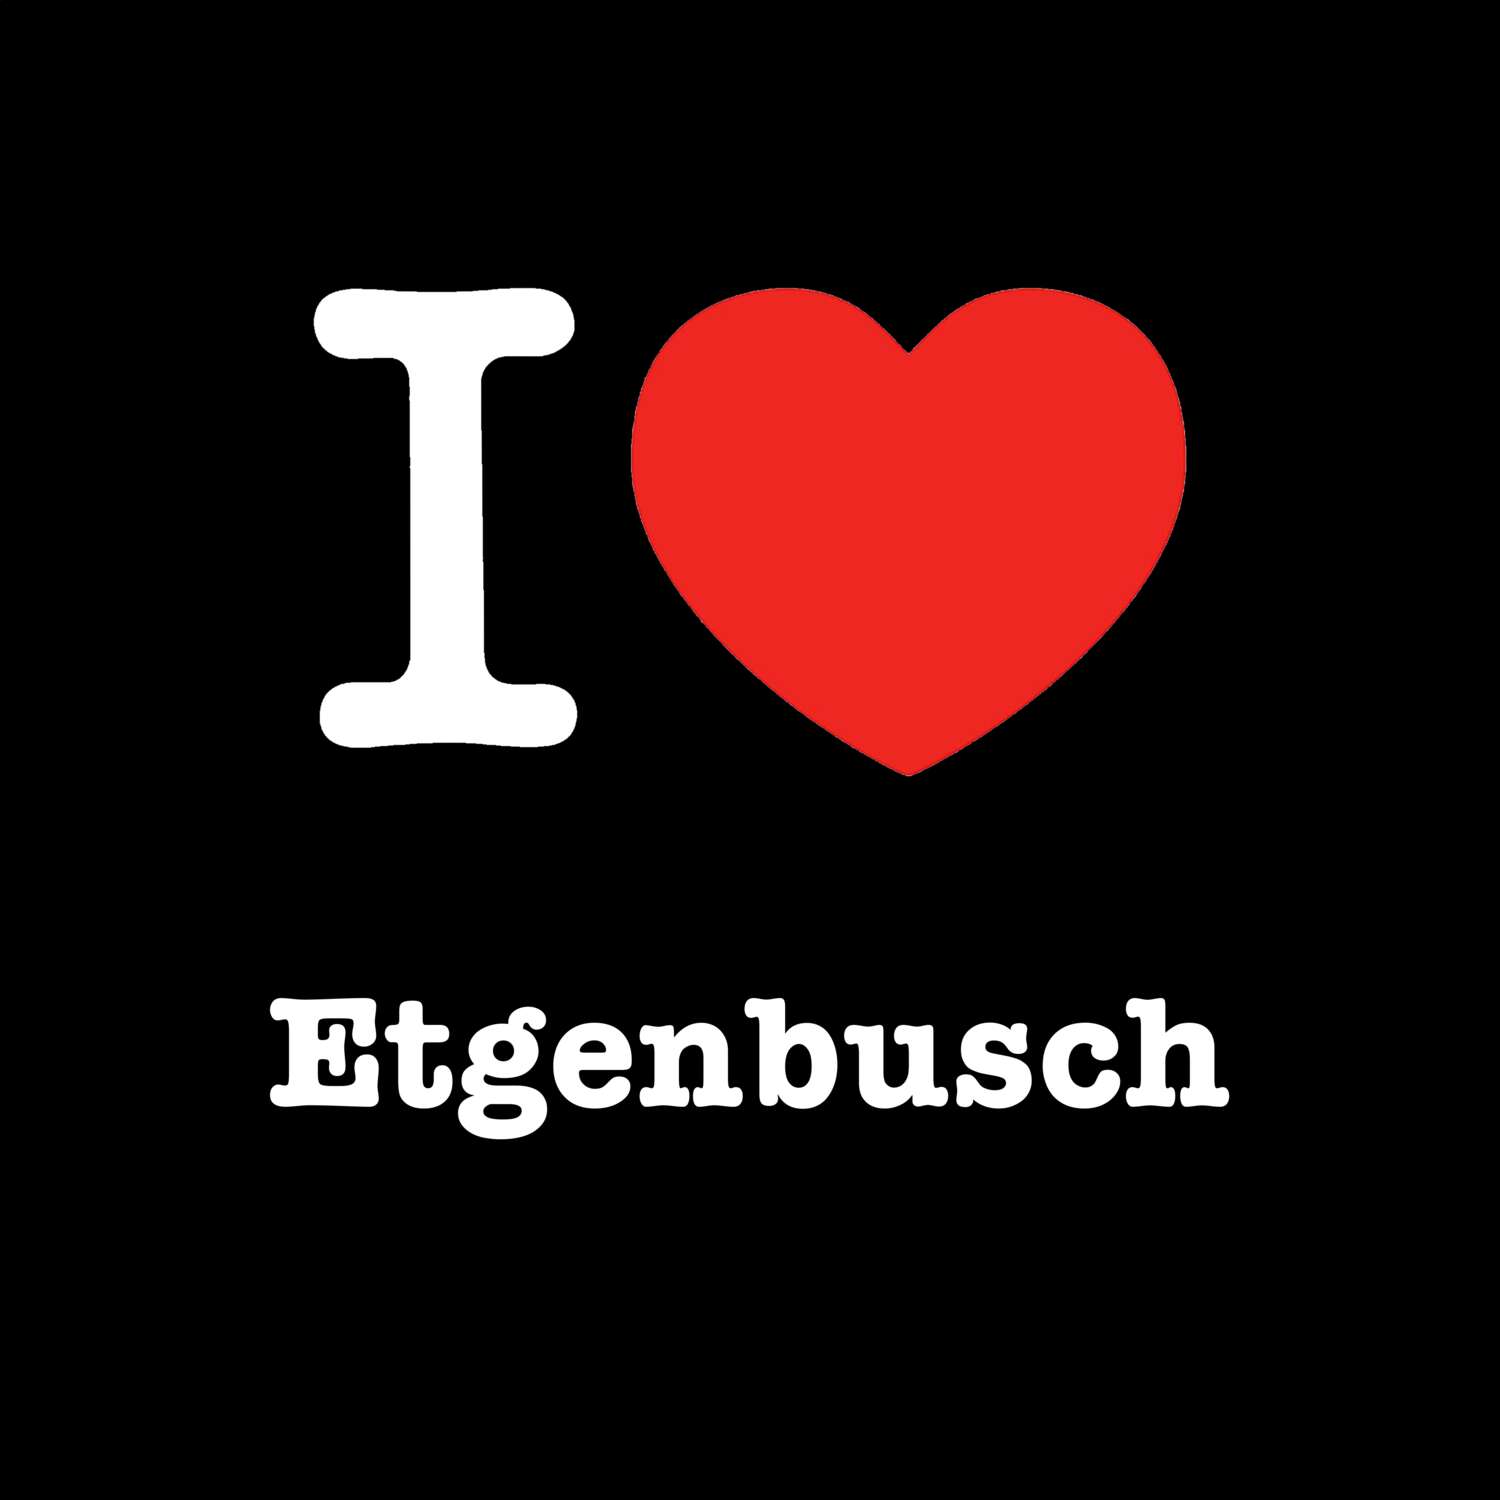 Etgenbusch T-Shirt »I love«